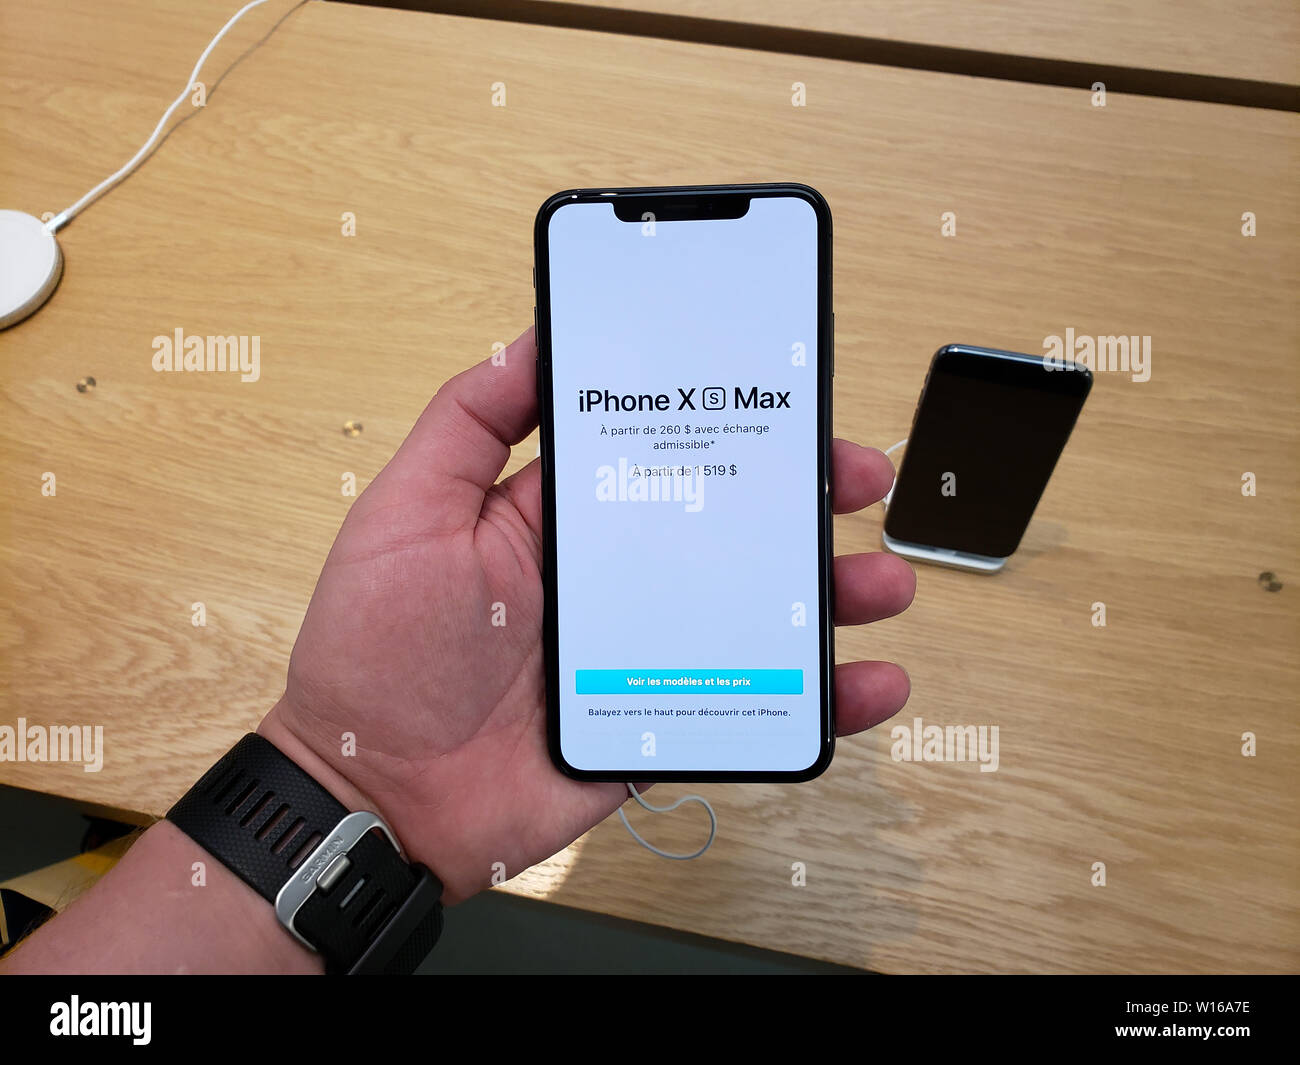 MONTREAL, Canada - 20 giugno 2019: Apple iPhone XS Max in una mano presso gli Apple store. Apple Inc. è una multinazionale americana di tecnologia della sede centrale della società Foto Stock